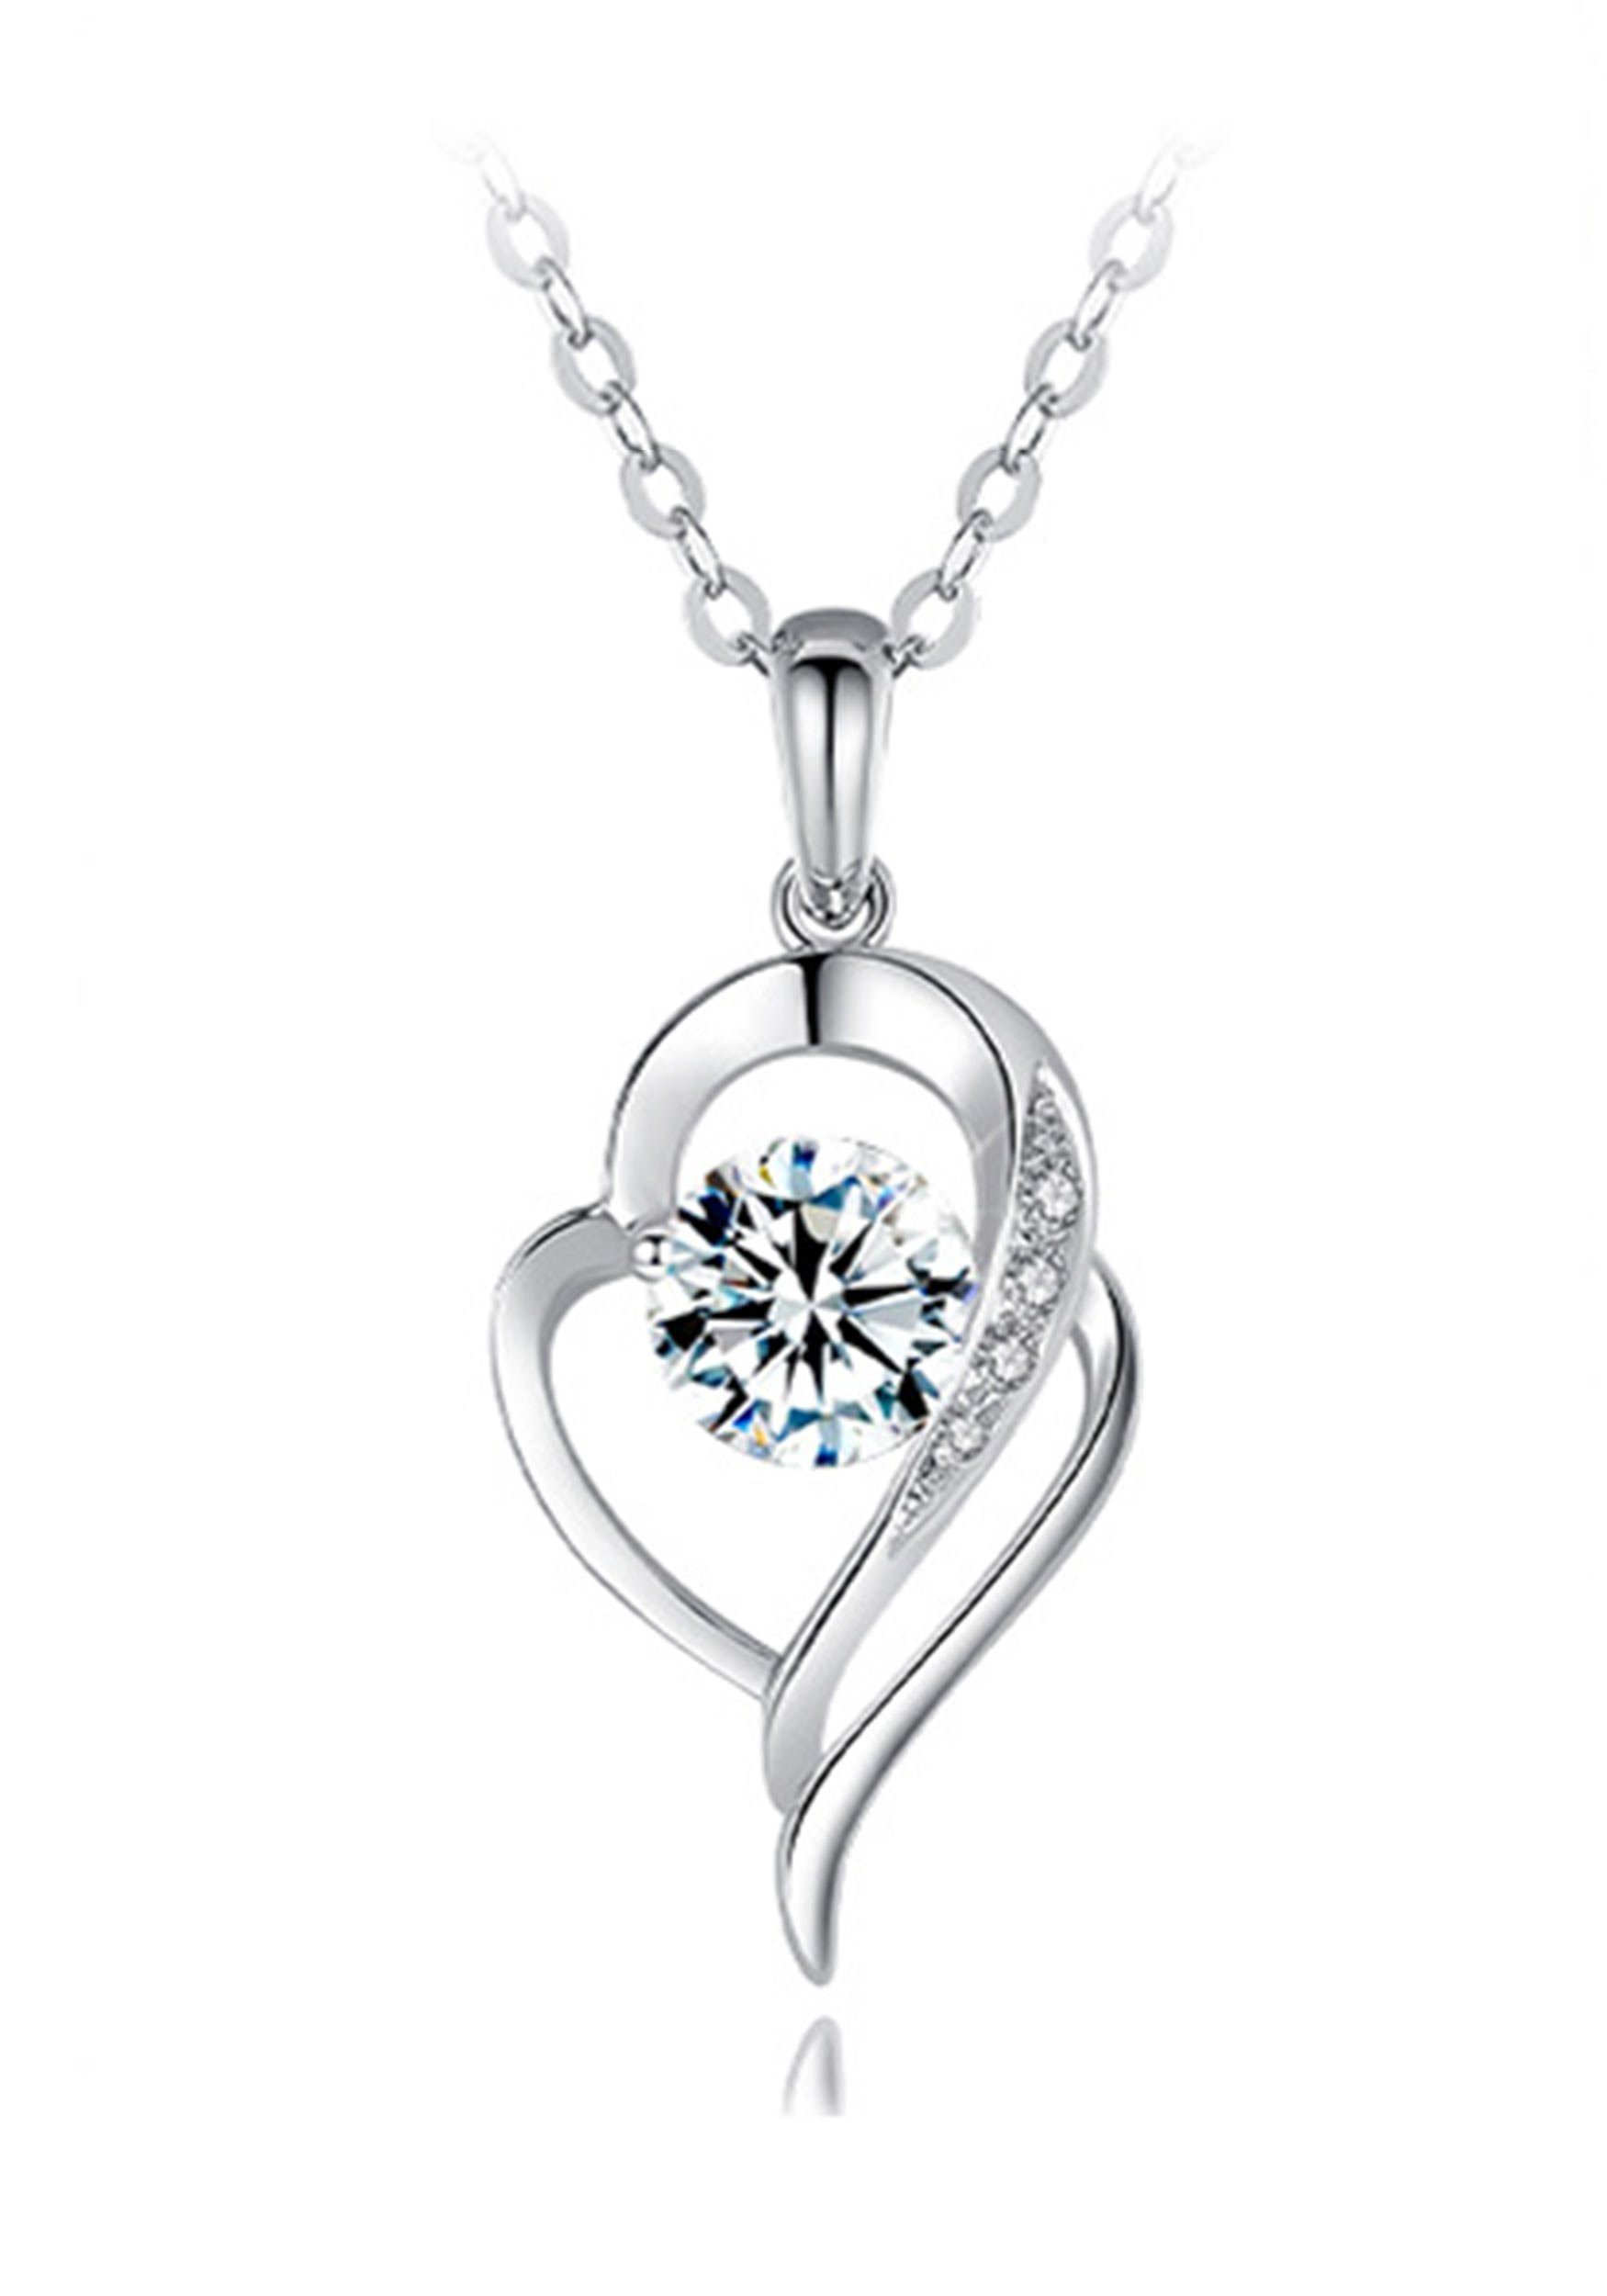 MAGICSHE Herzkette Kette mit Anhänger, Brillianten Diamant 925 Silber Herzkonstruktion Kette